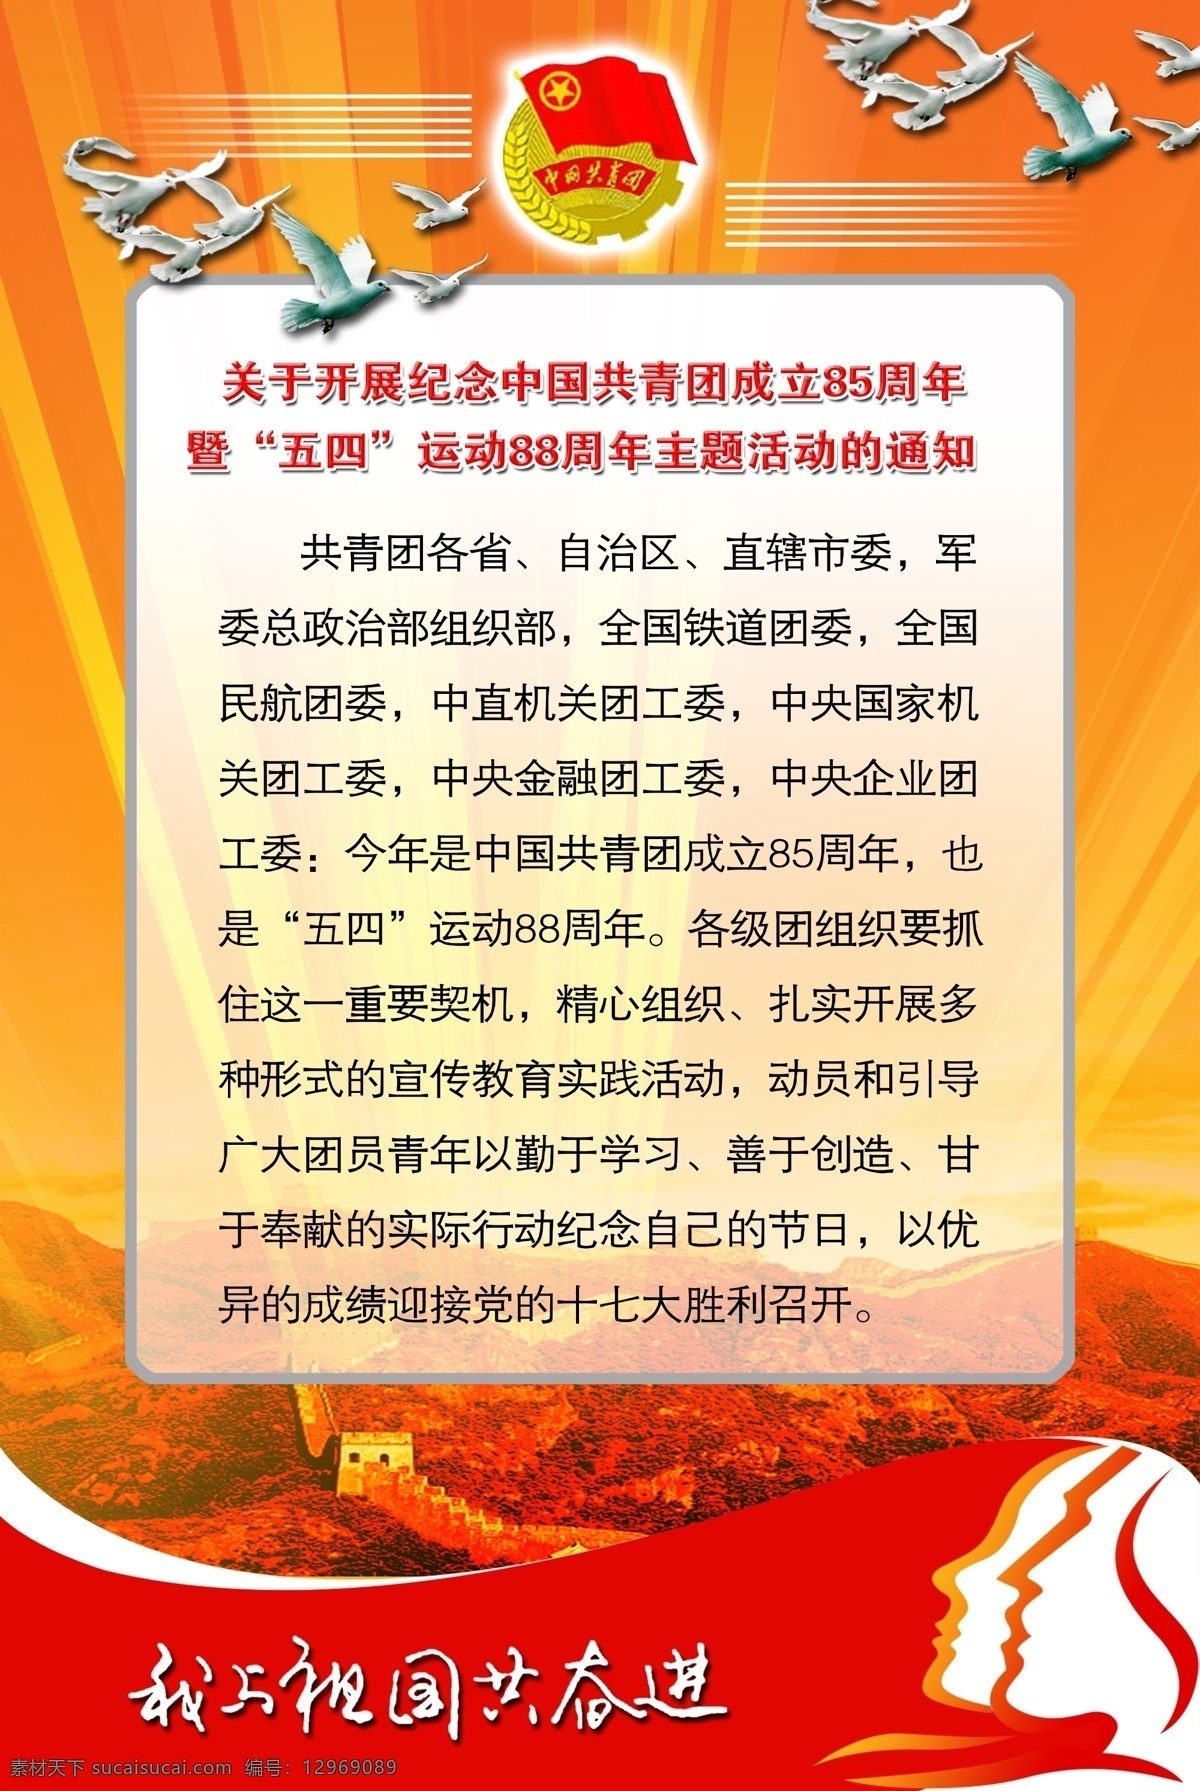 中国共青团 展板 共产党 五四 背景 元素 鸽子 长城 党 宣传 黄色 红色 艺术字 通知 展板模板 广告设计模板 源文件